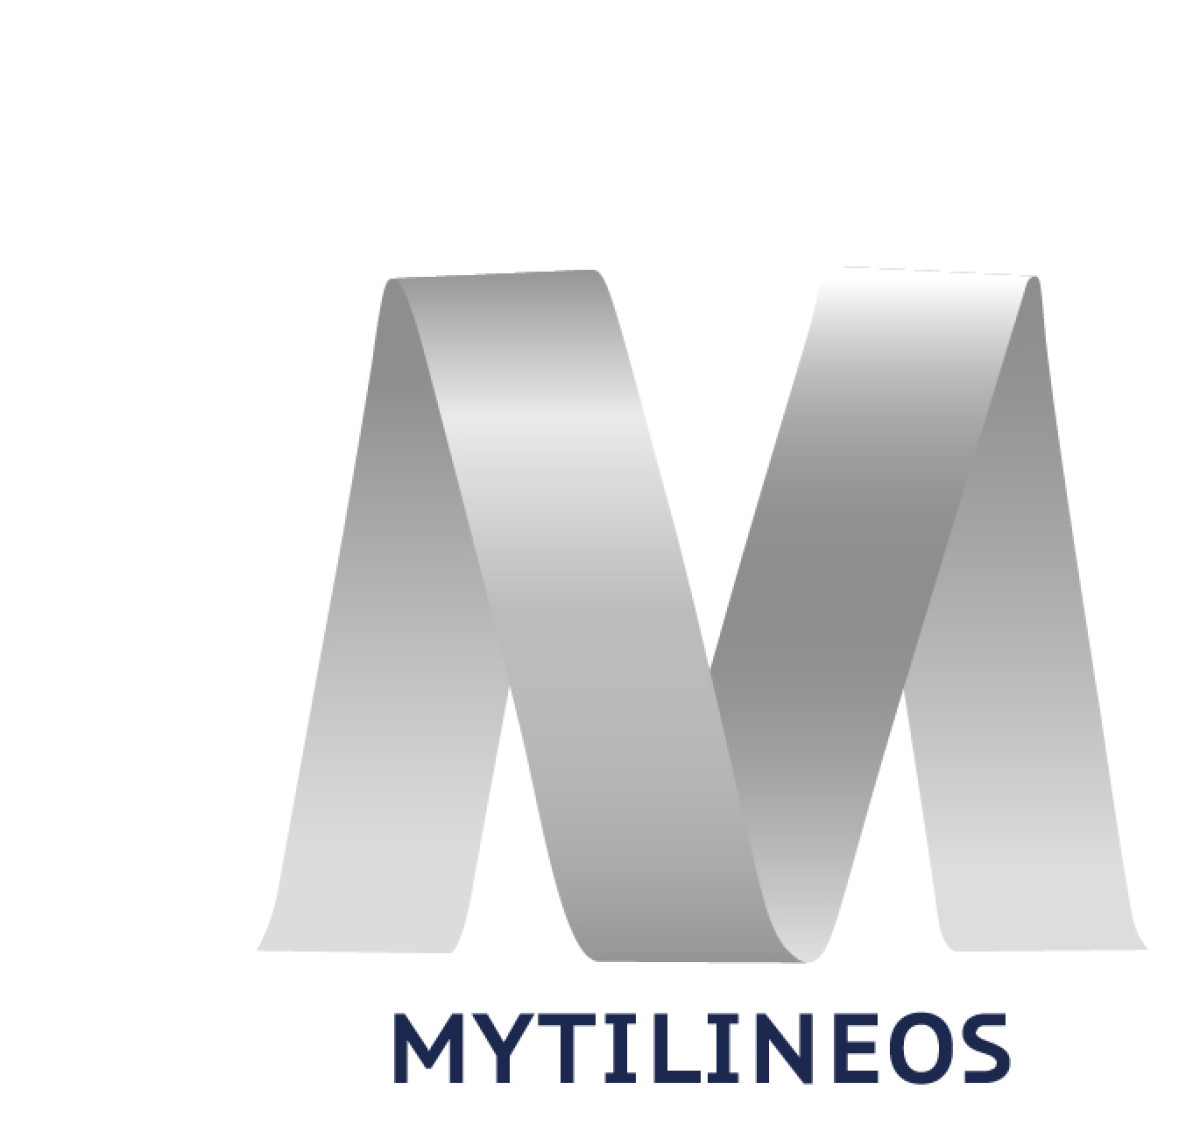 Για κάθε 1 € που επενδύθηκε στο πρόγραμμα #HoMellon η MYTILINEOS επέστρεψε 3,32 € κοινωνικής αξίας